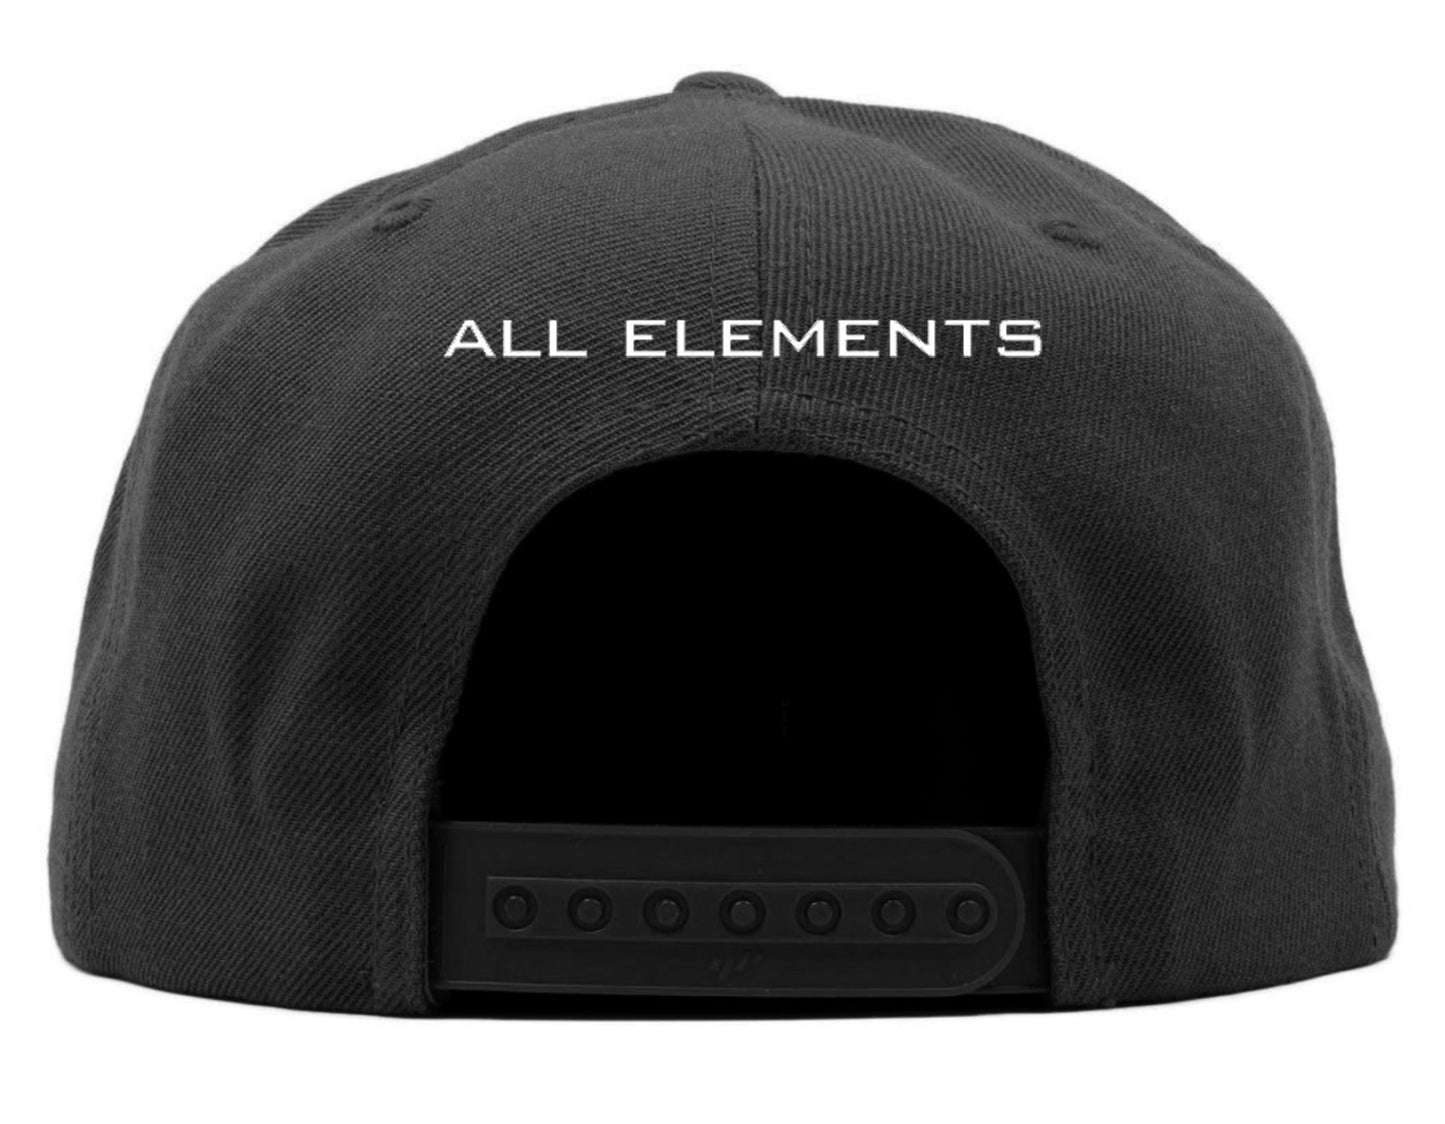 All Elements / DJ J-Ronin Snapback Hat